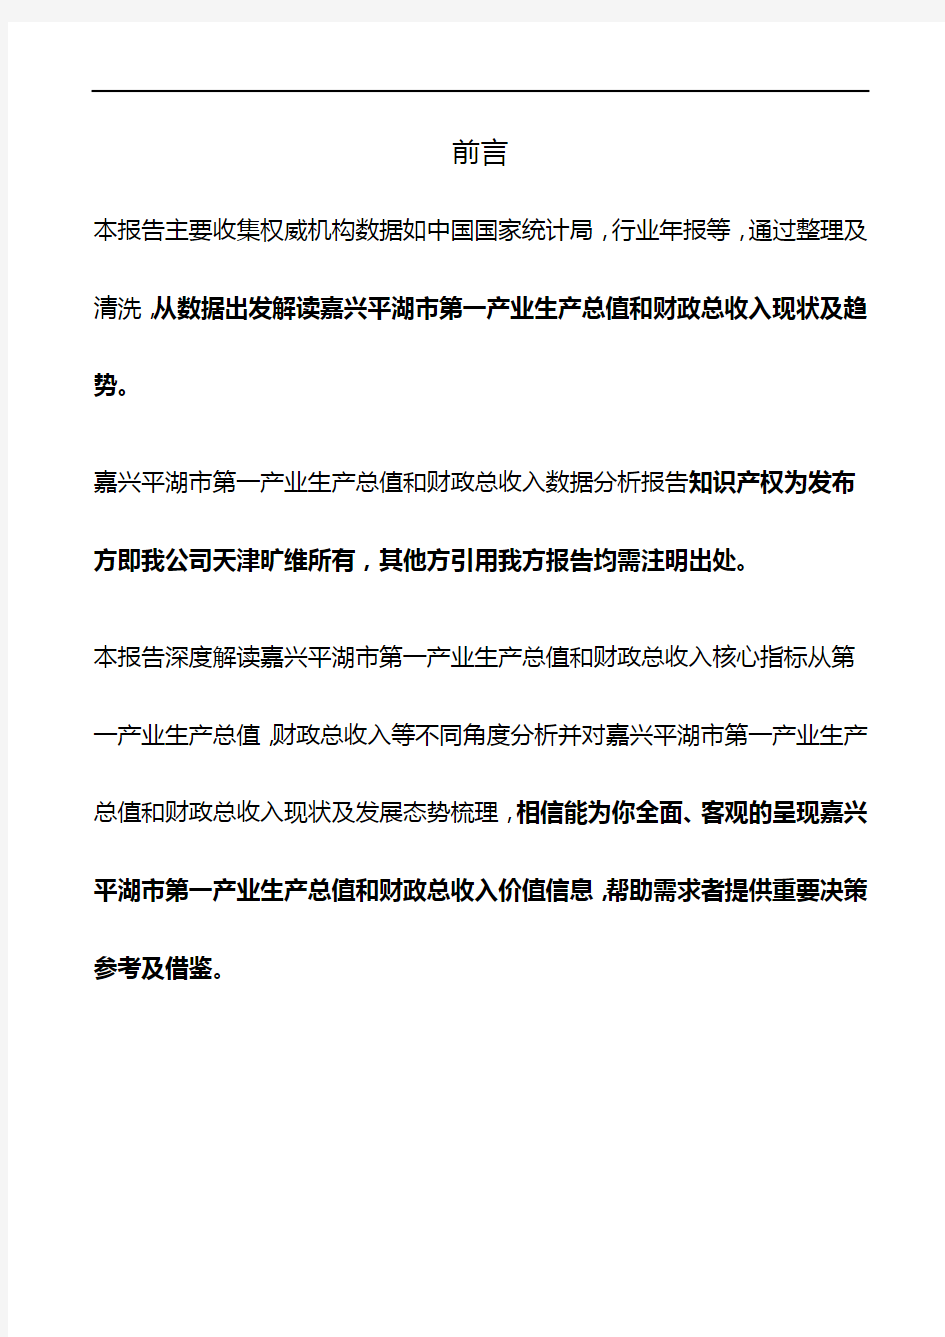 浙江省嘉兴平湖市第一产业生产总值和财政总收入3年数据分析报告2020版